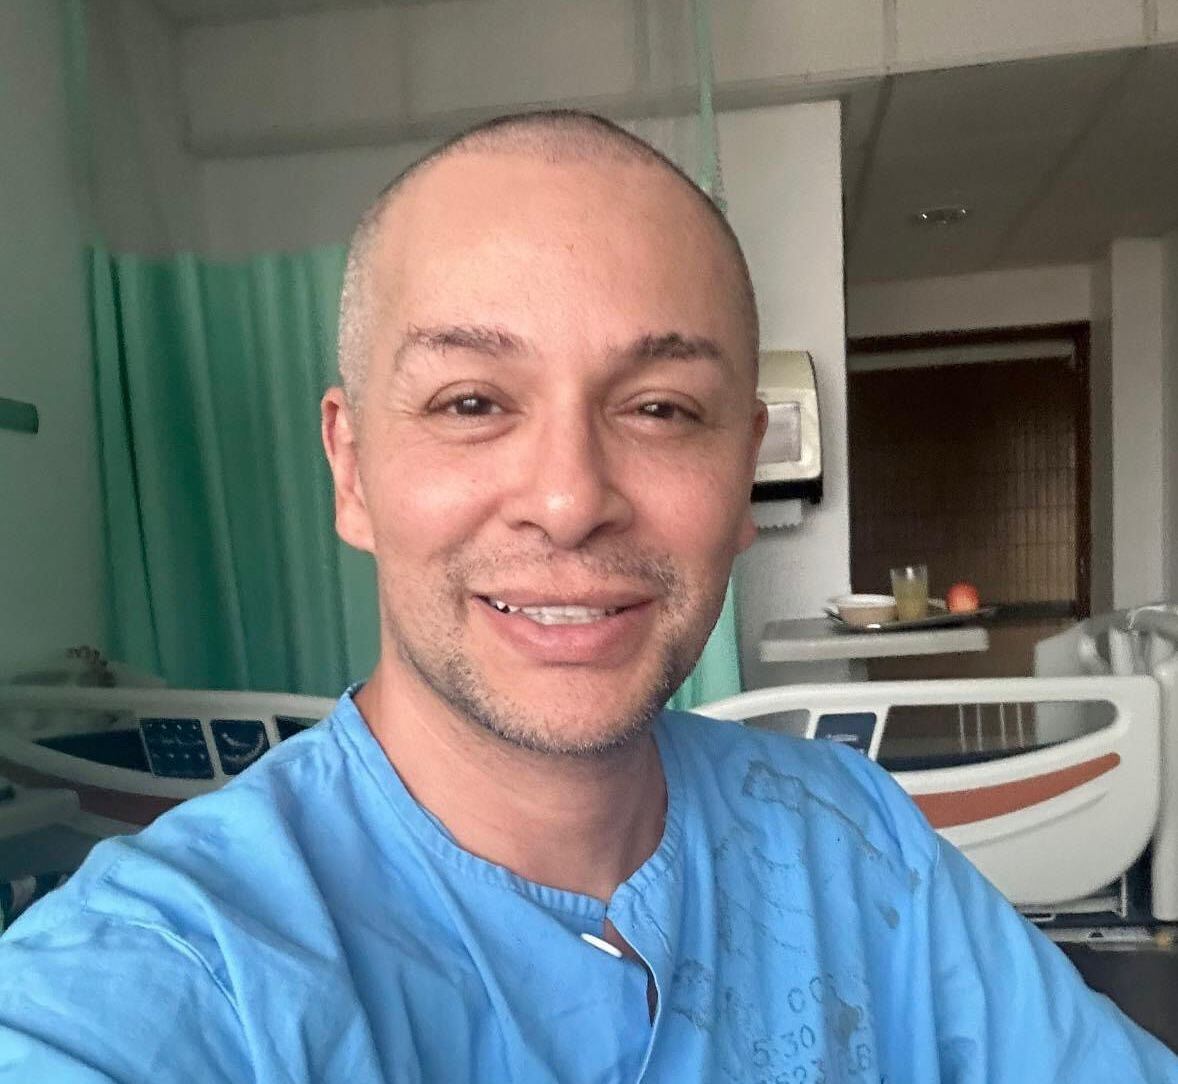 Angelrafael radicaba en Estados Unidos, pero regresó a Costa Rica en 2021 y se mantiene en el país recibiendo atención médica. Foto: Facebook